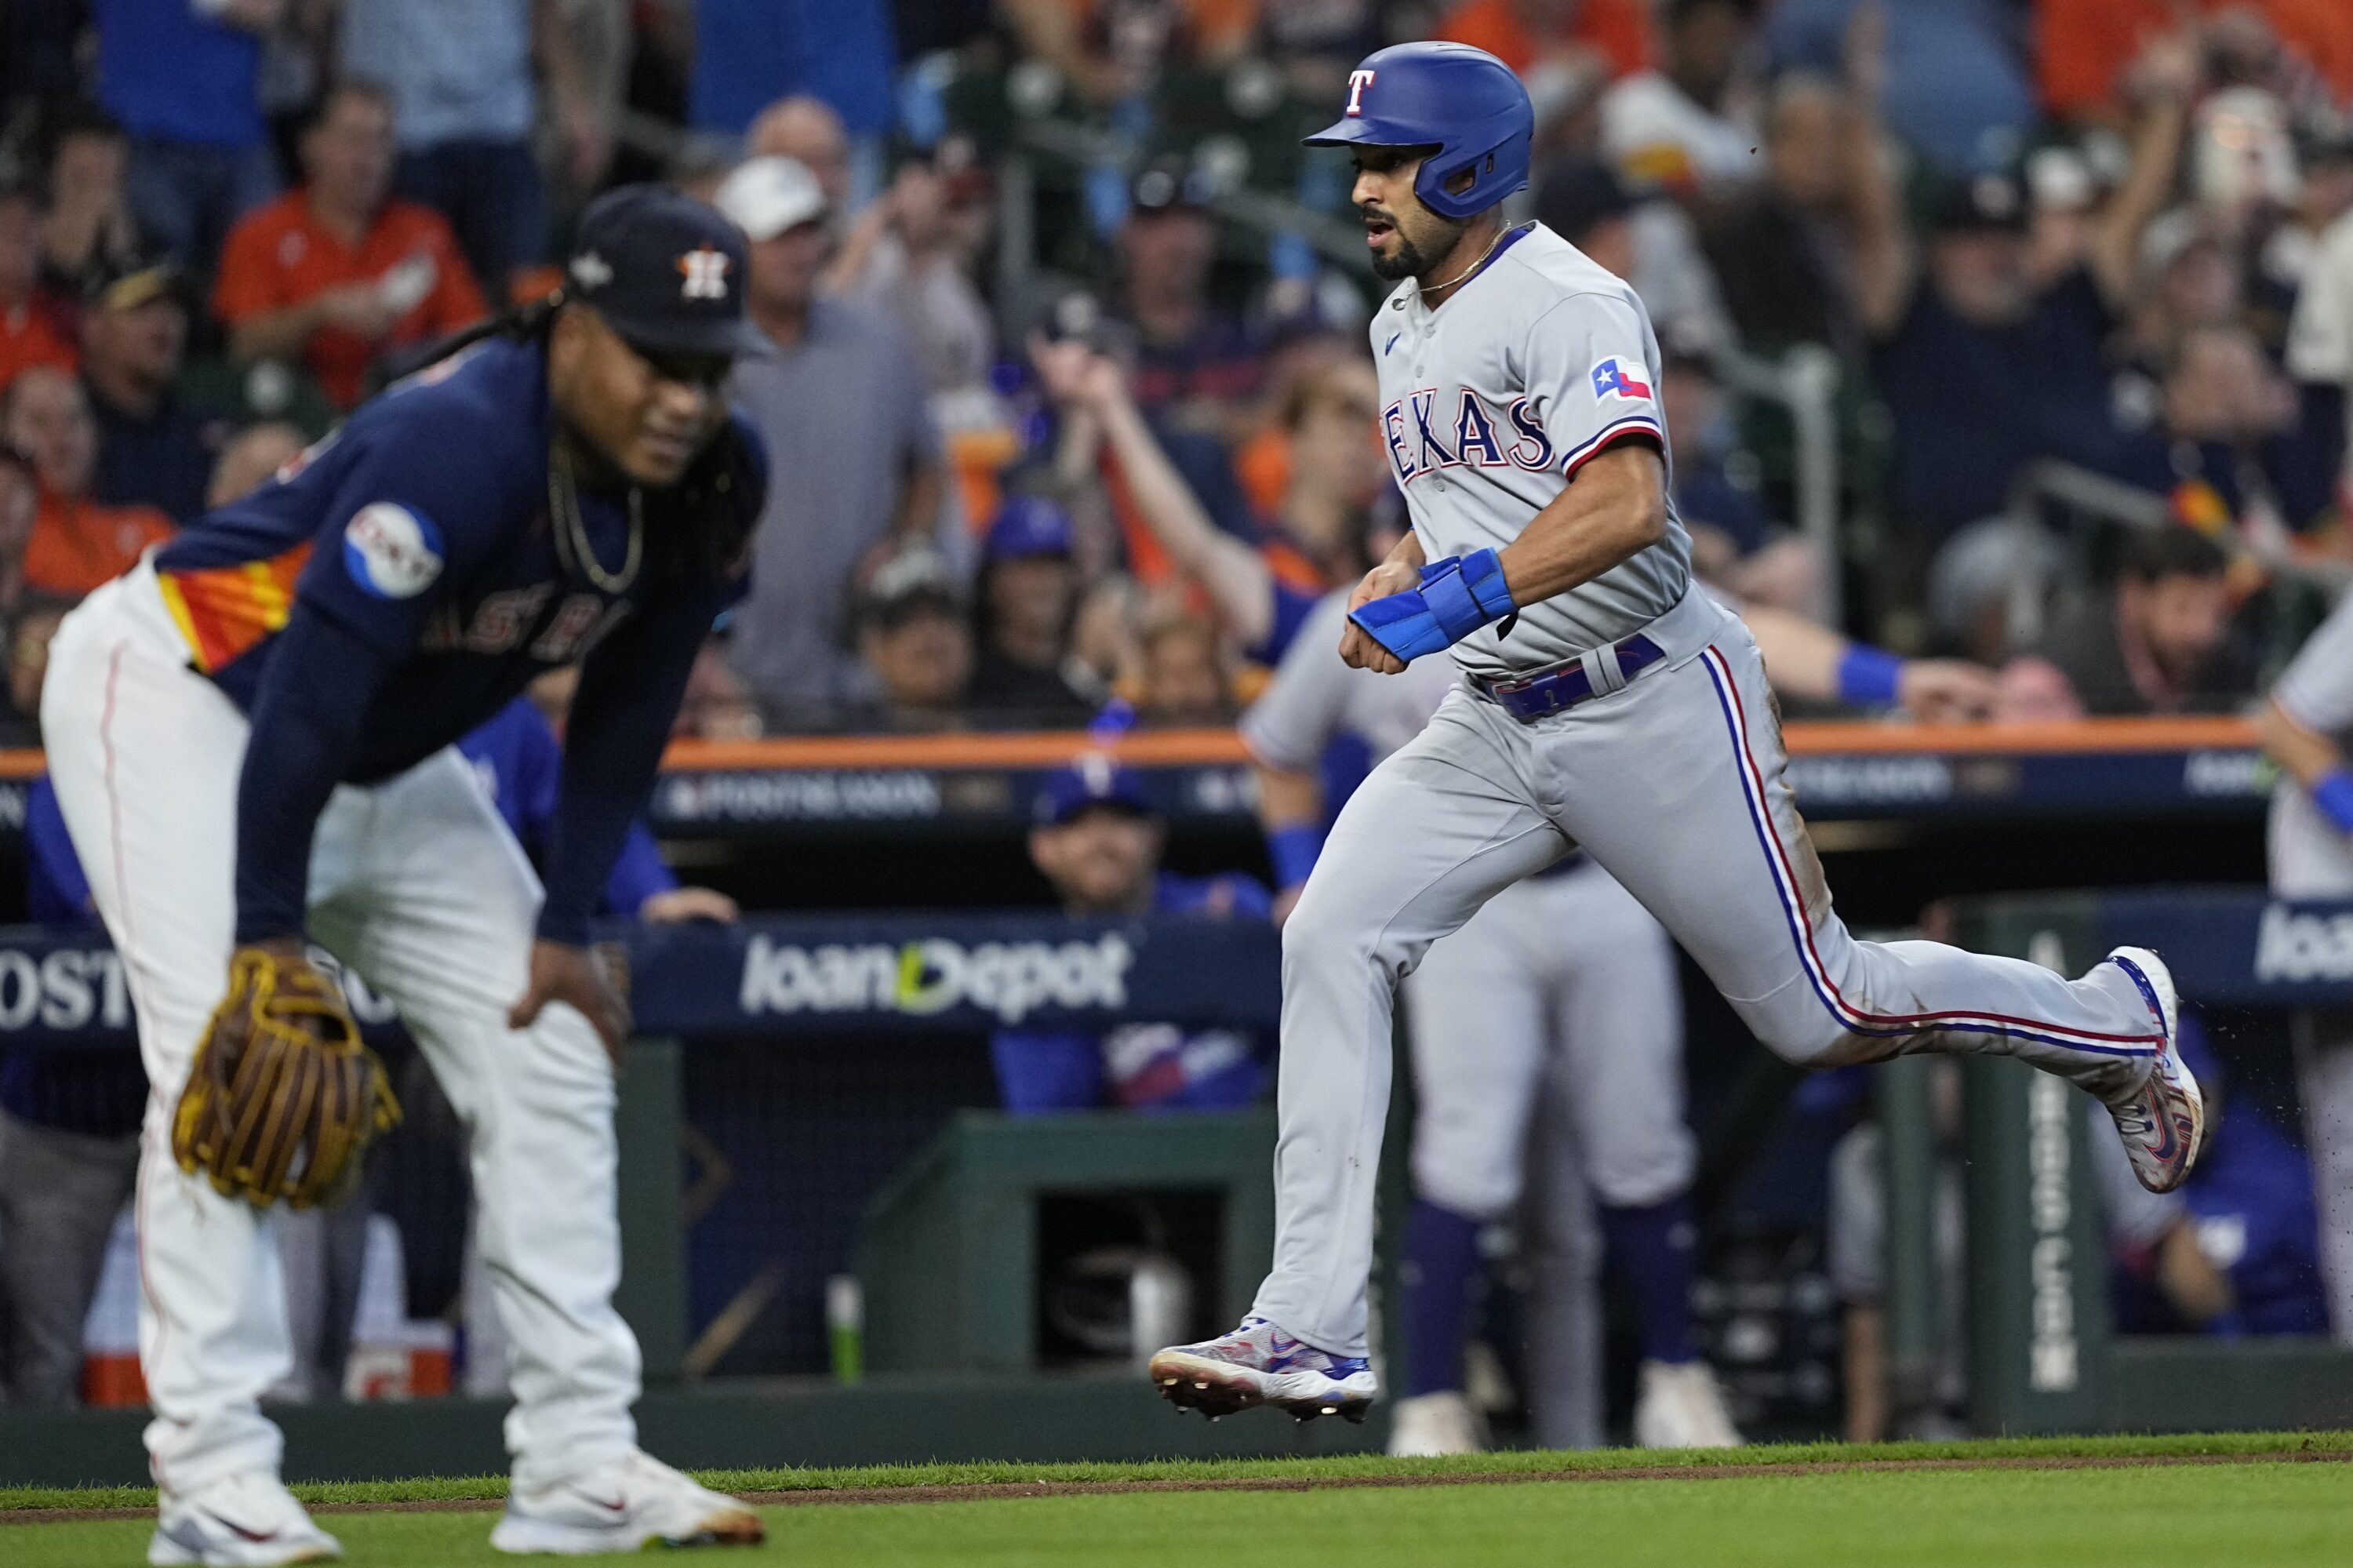 Framber Valdez wins first MLB start for Astros